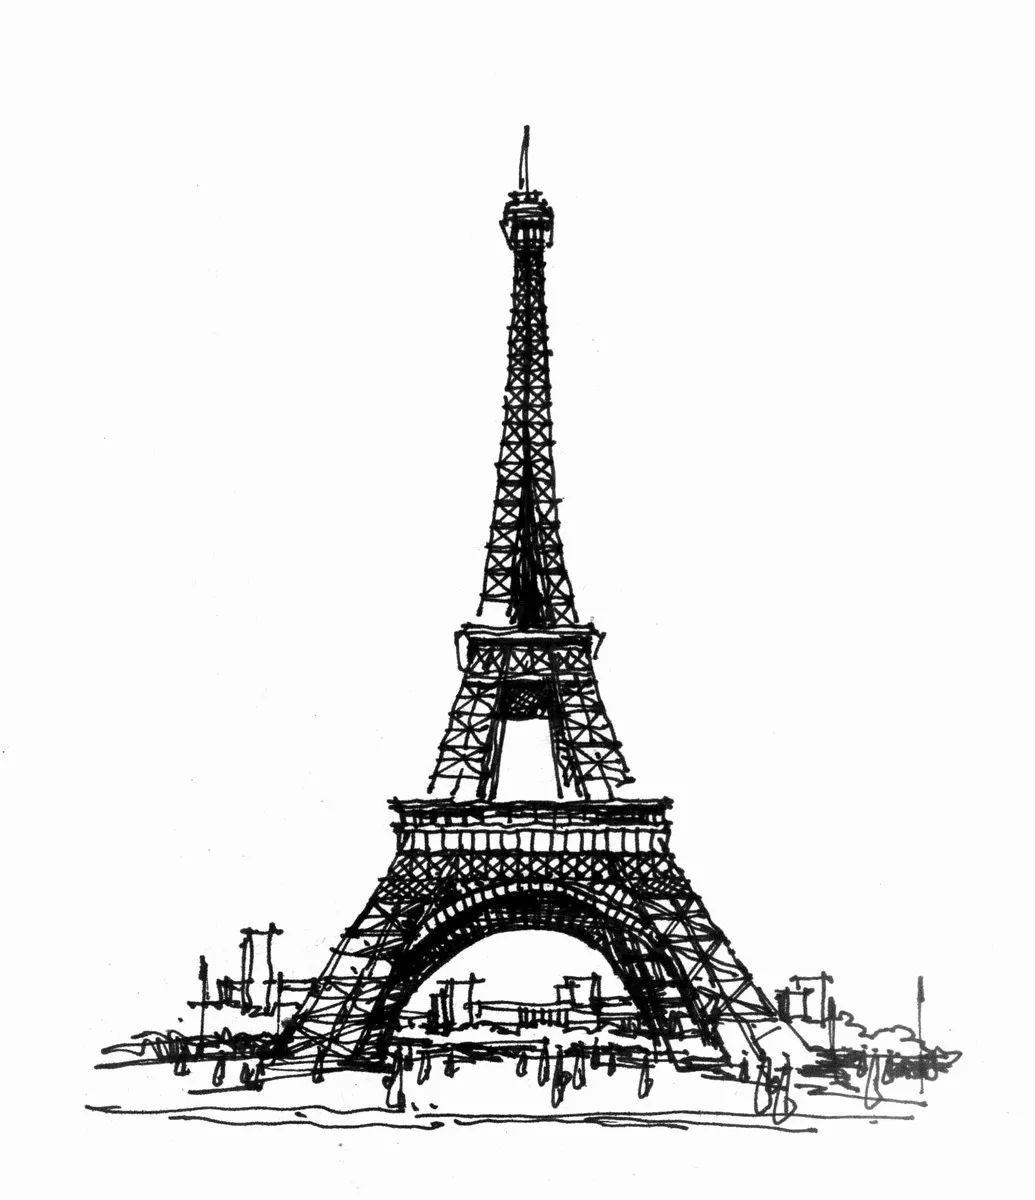 巴黎`在黑白的埃佛尔铁塔经典照片 库存图片. 图片 包括有 户外, 投反对票, 观光, 著名, 图标式, 风景 - 92301761